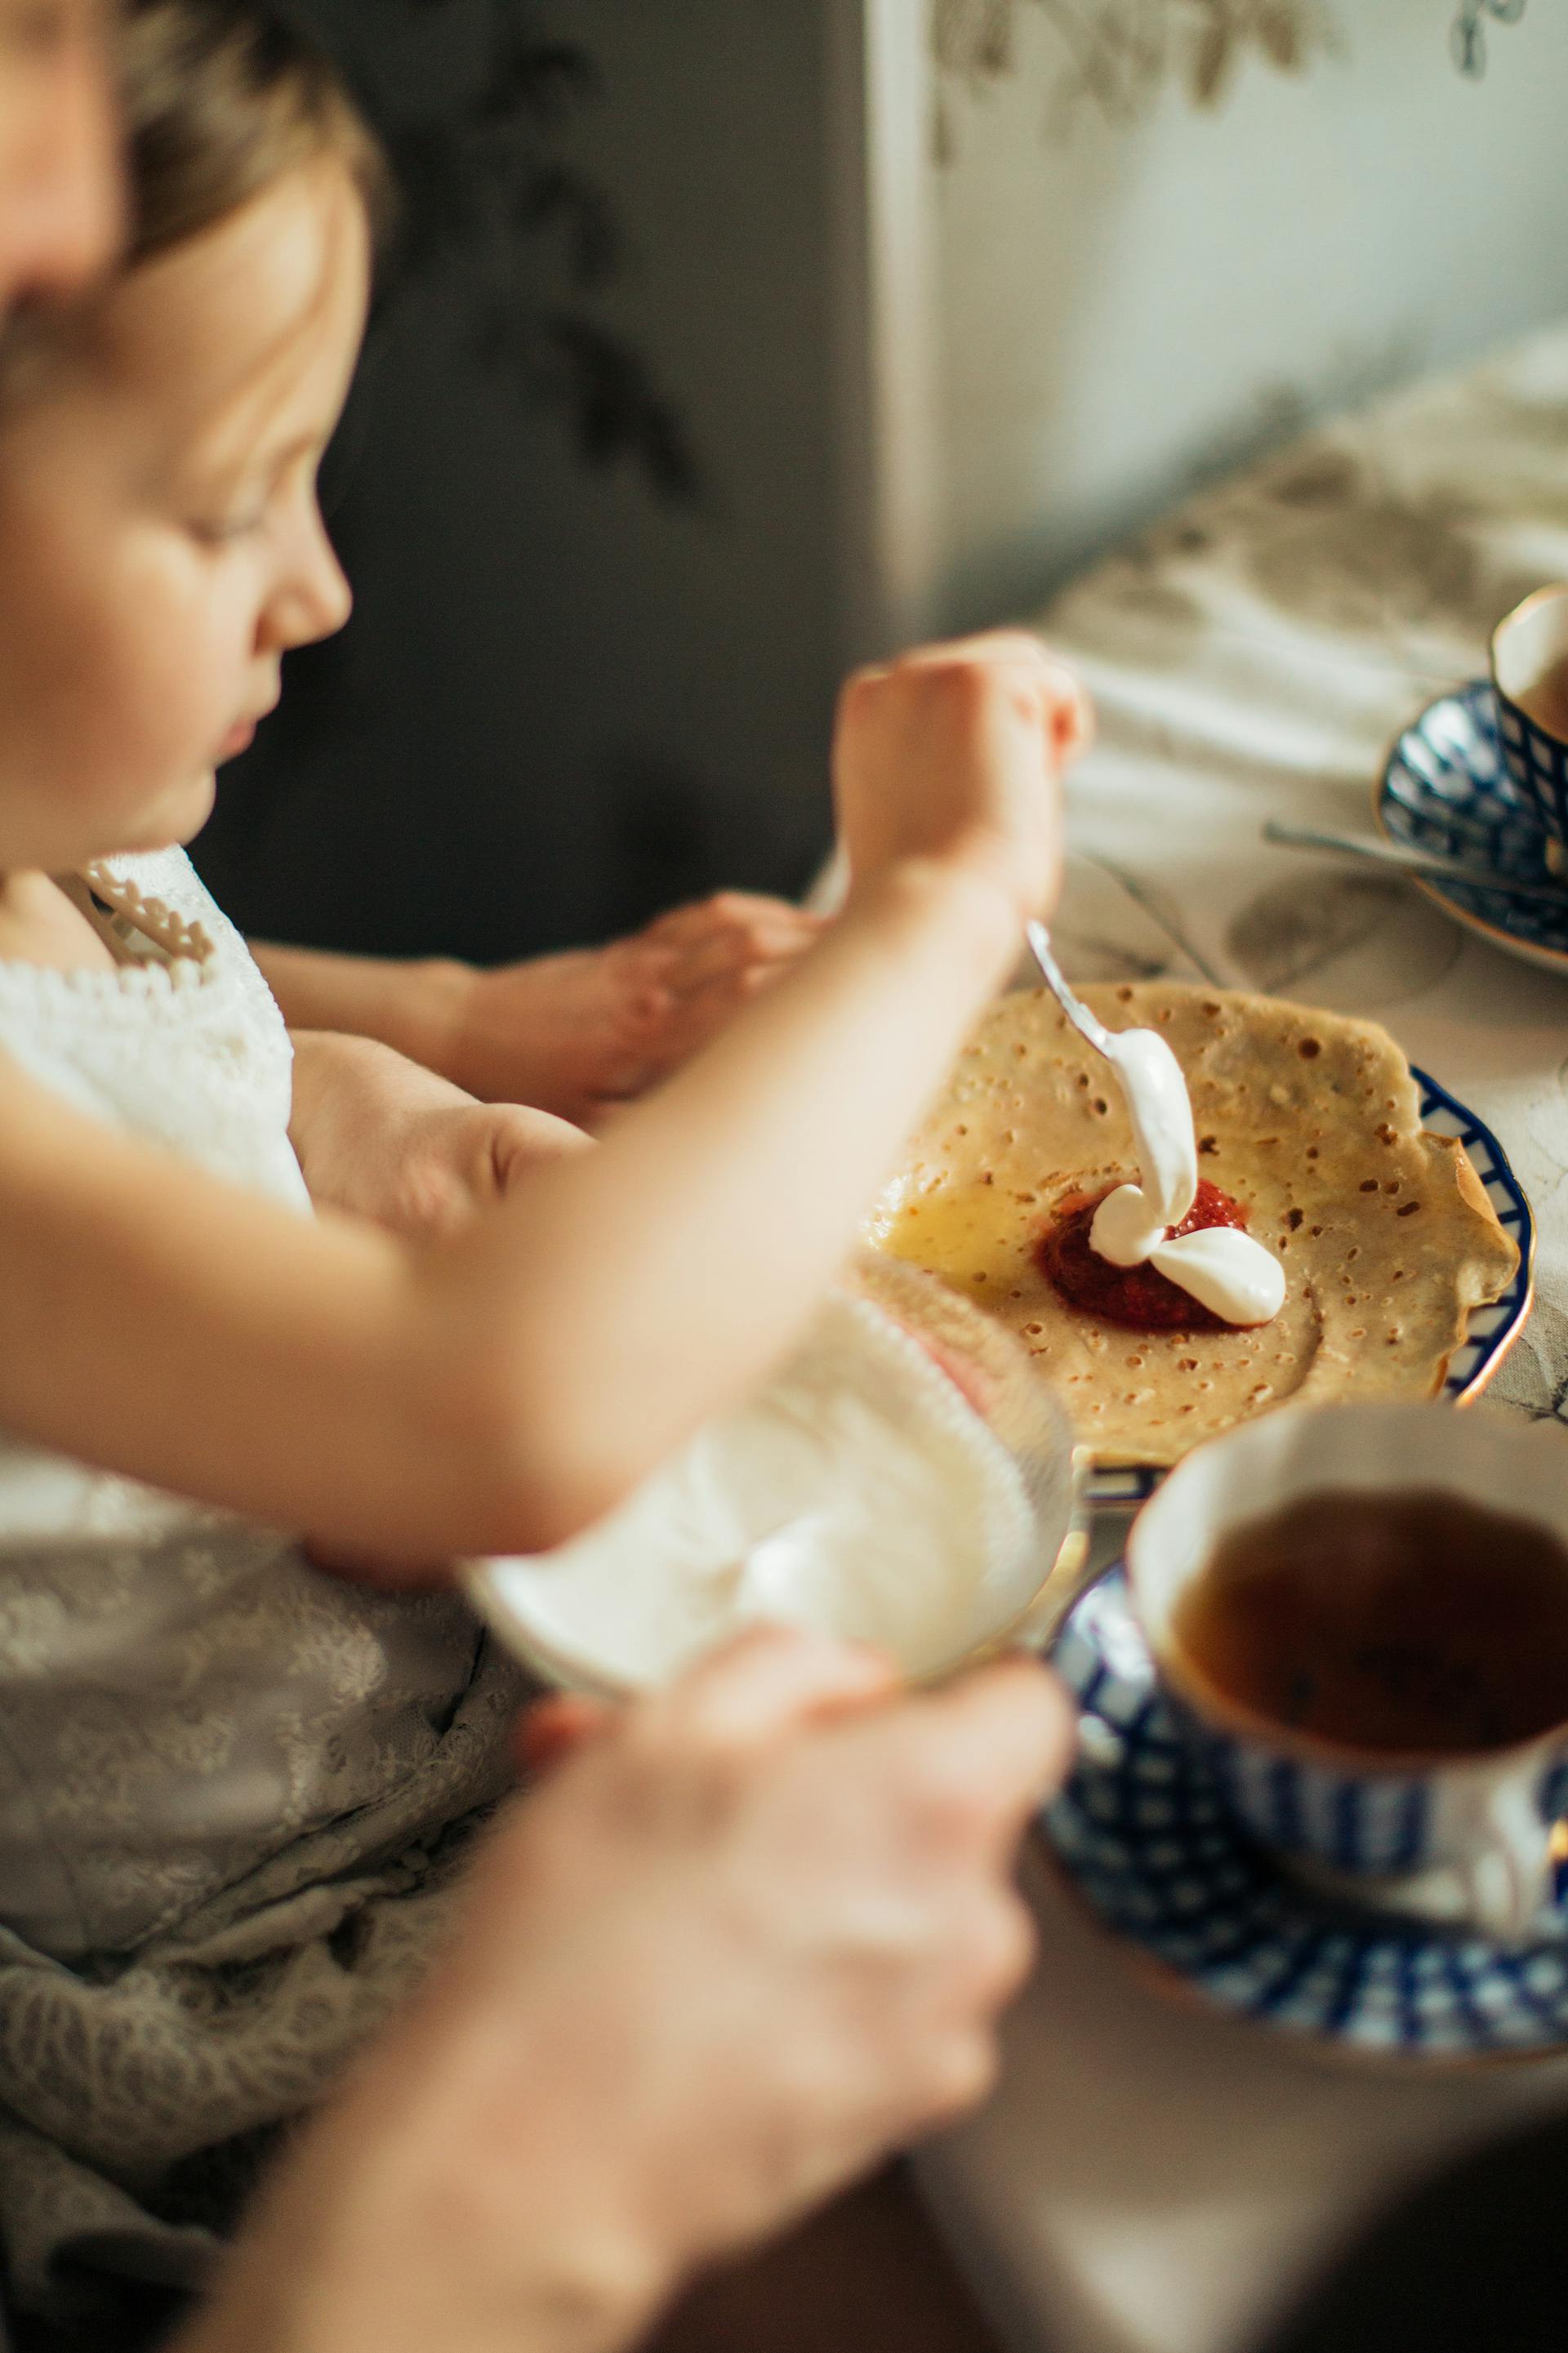 Una joven untando mermelada y nata en un crepe | Fuente: Pexels